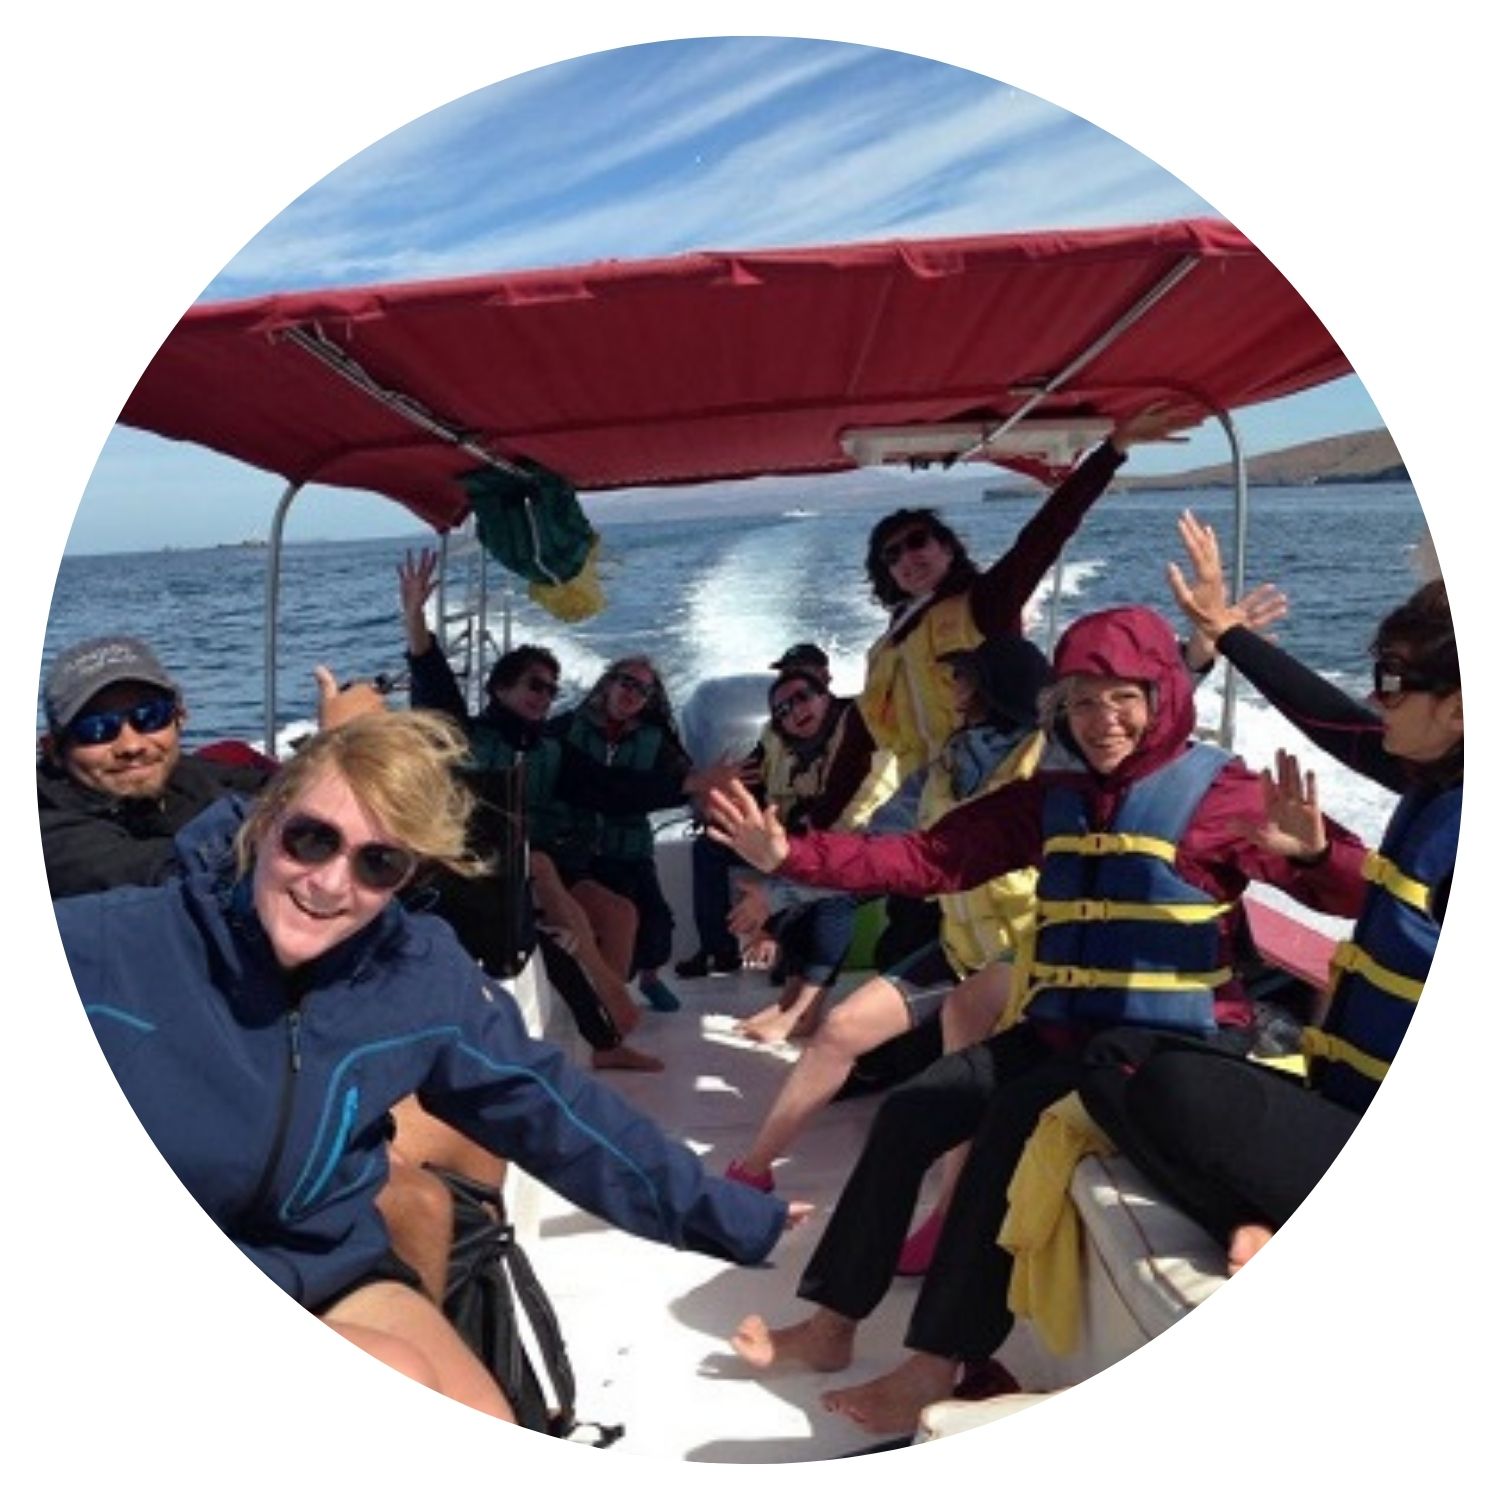 Groupe de personnes prenant une photo de groupe sur un bateau en mer, capturant leur joie lors d'une expérience unique en Basse-Californie.